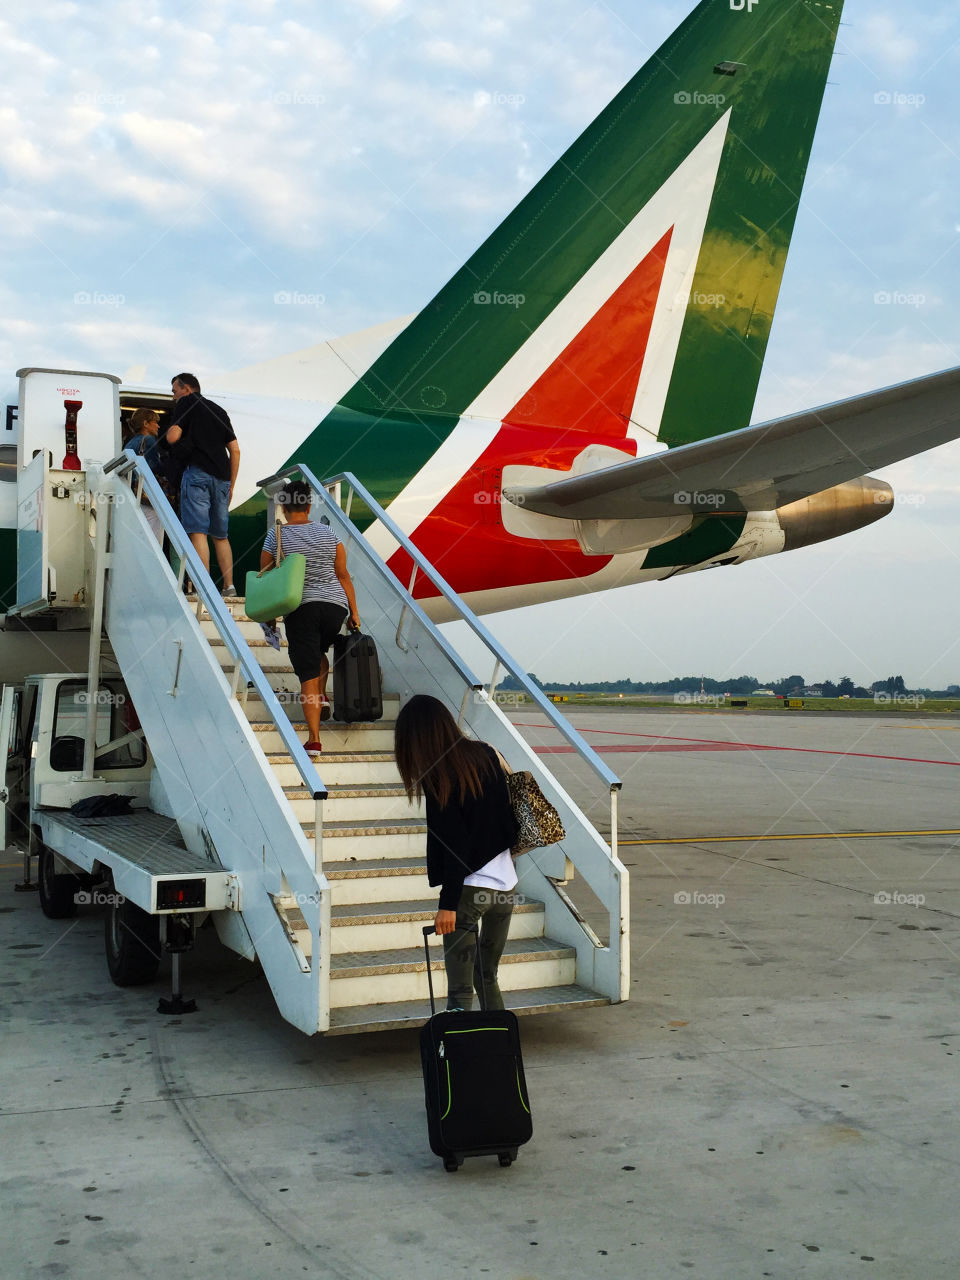 departure of Alitalia Airline